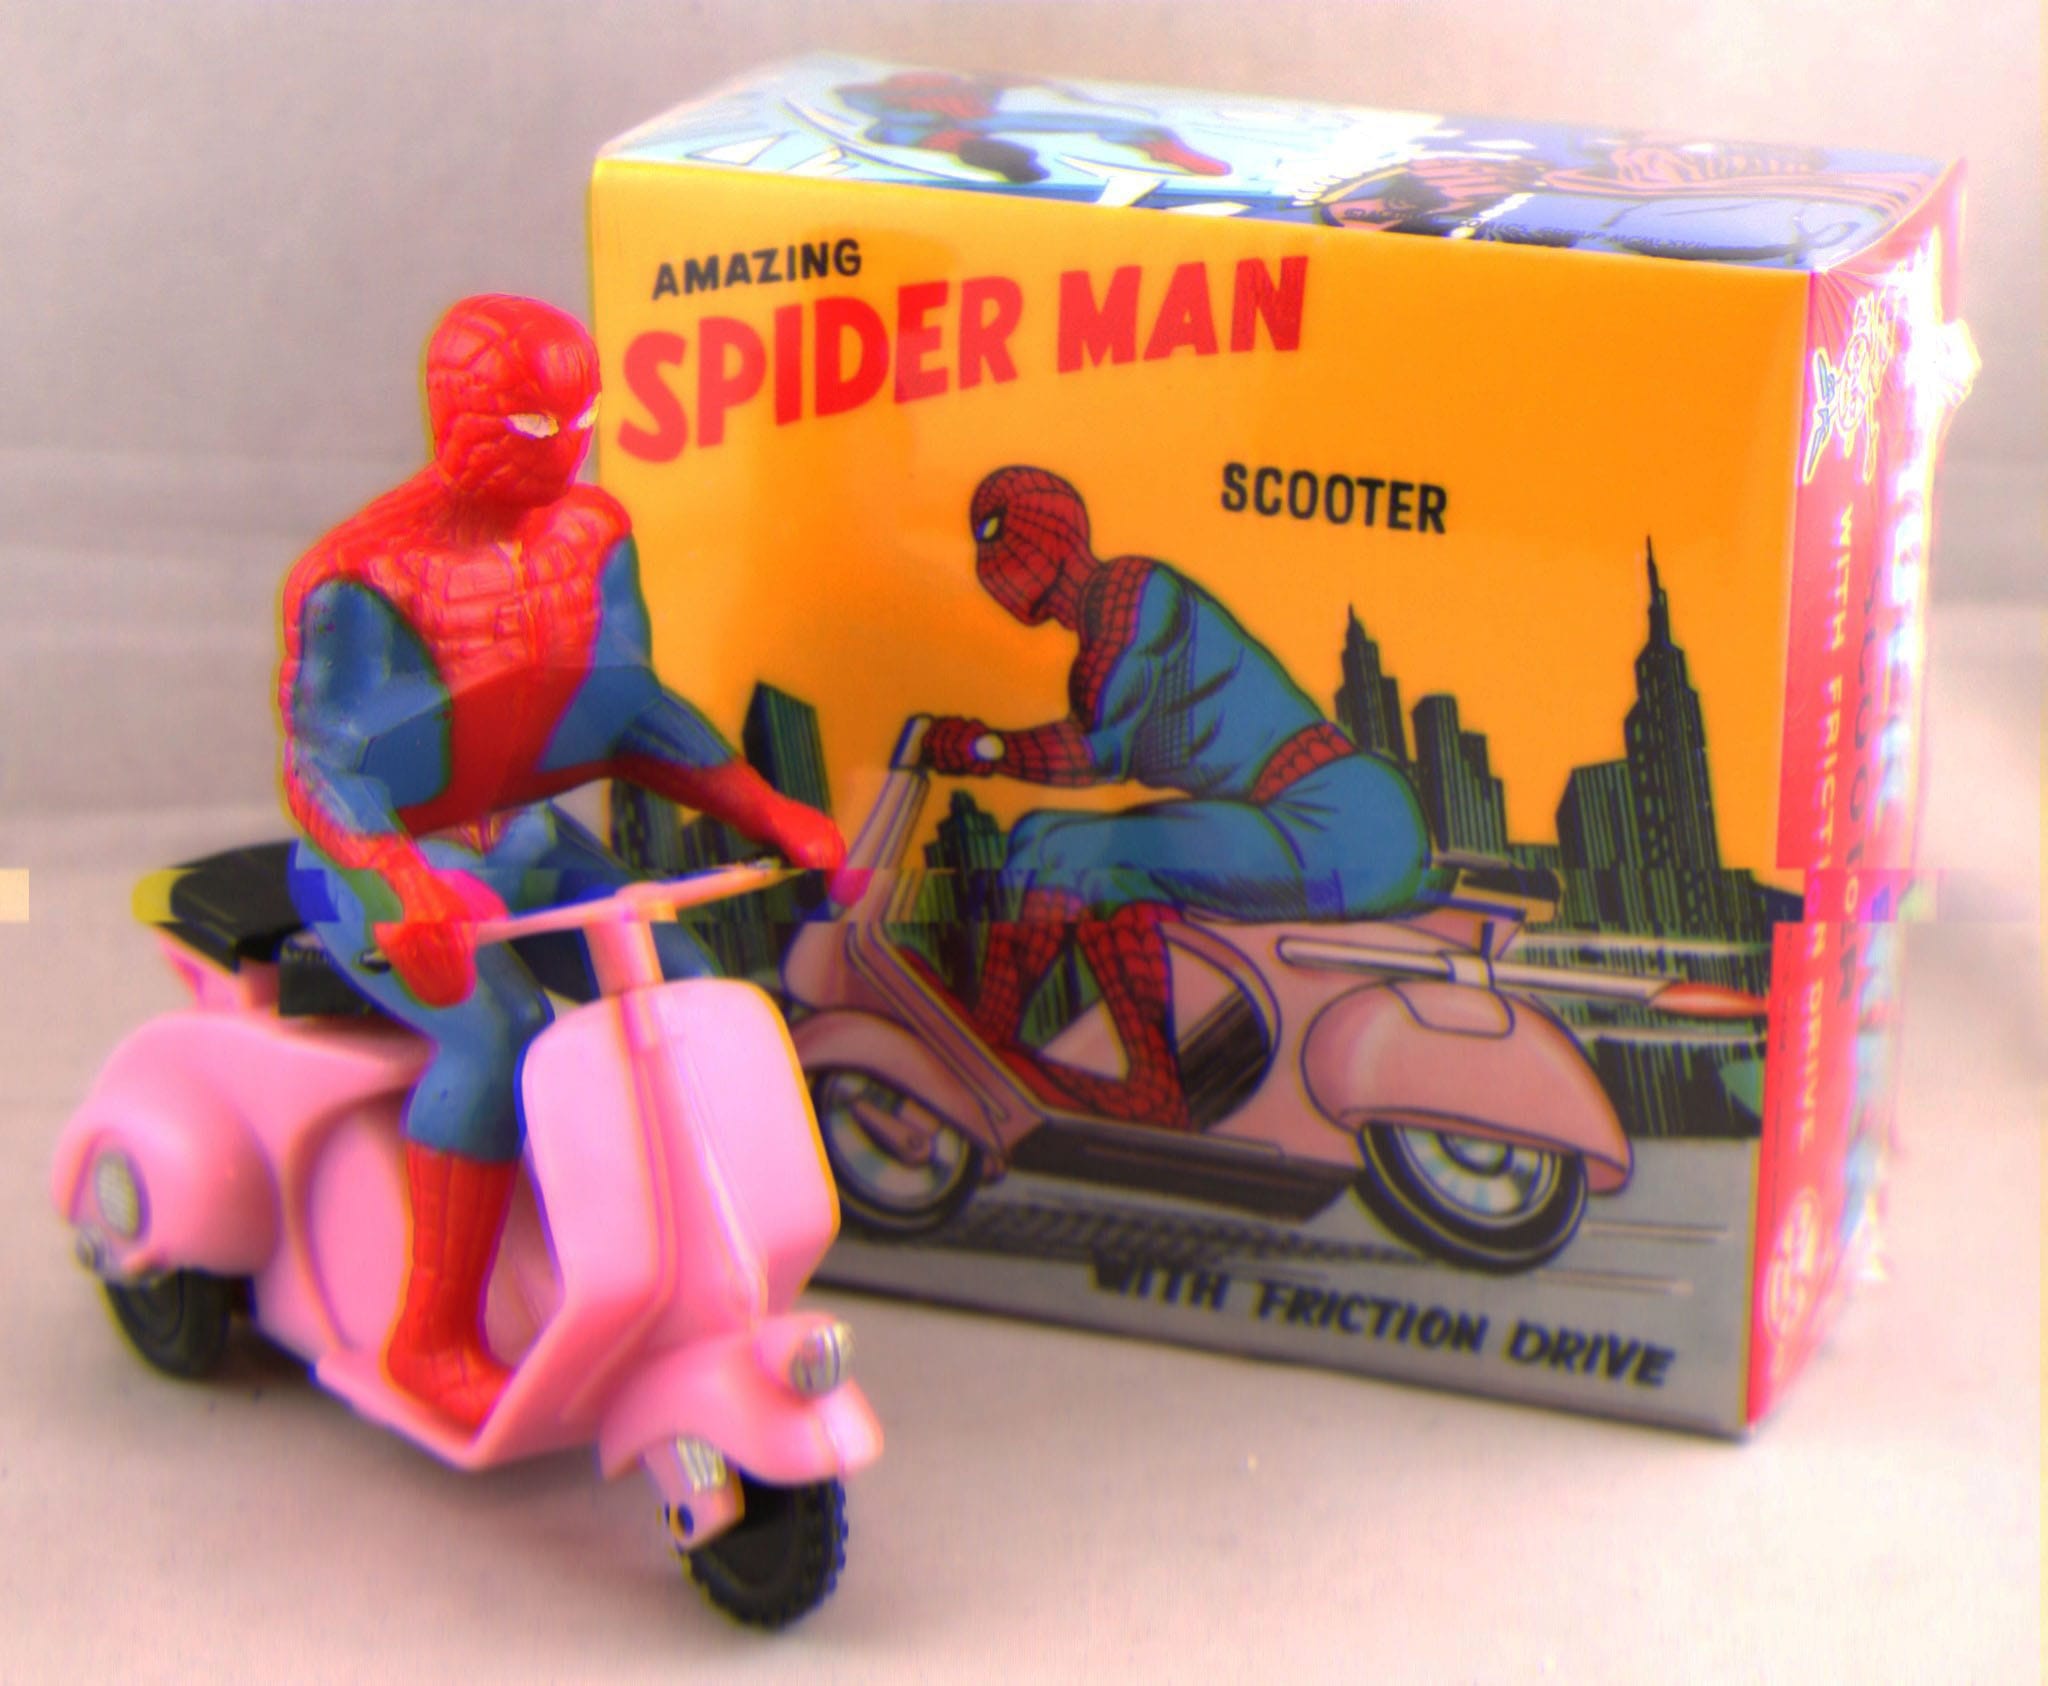 Адвокат из Лос-Анджелеса продаёт коллекцию Человека-паука, чтобы обеспечить семью